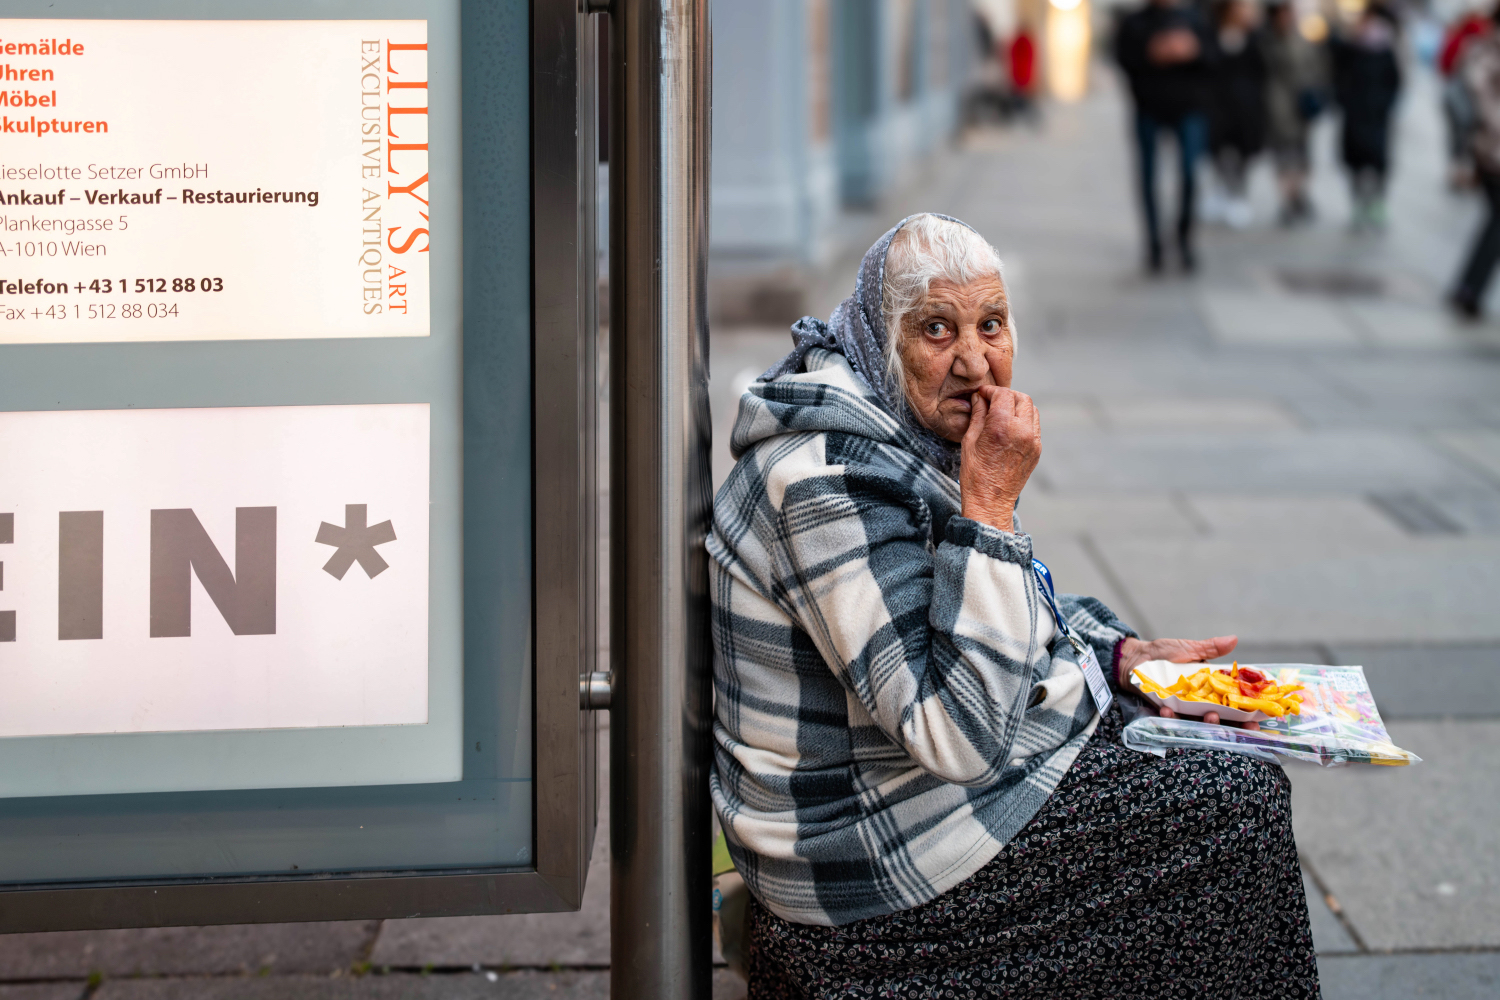 Oudere dame eet een patatje, zittend op straat